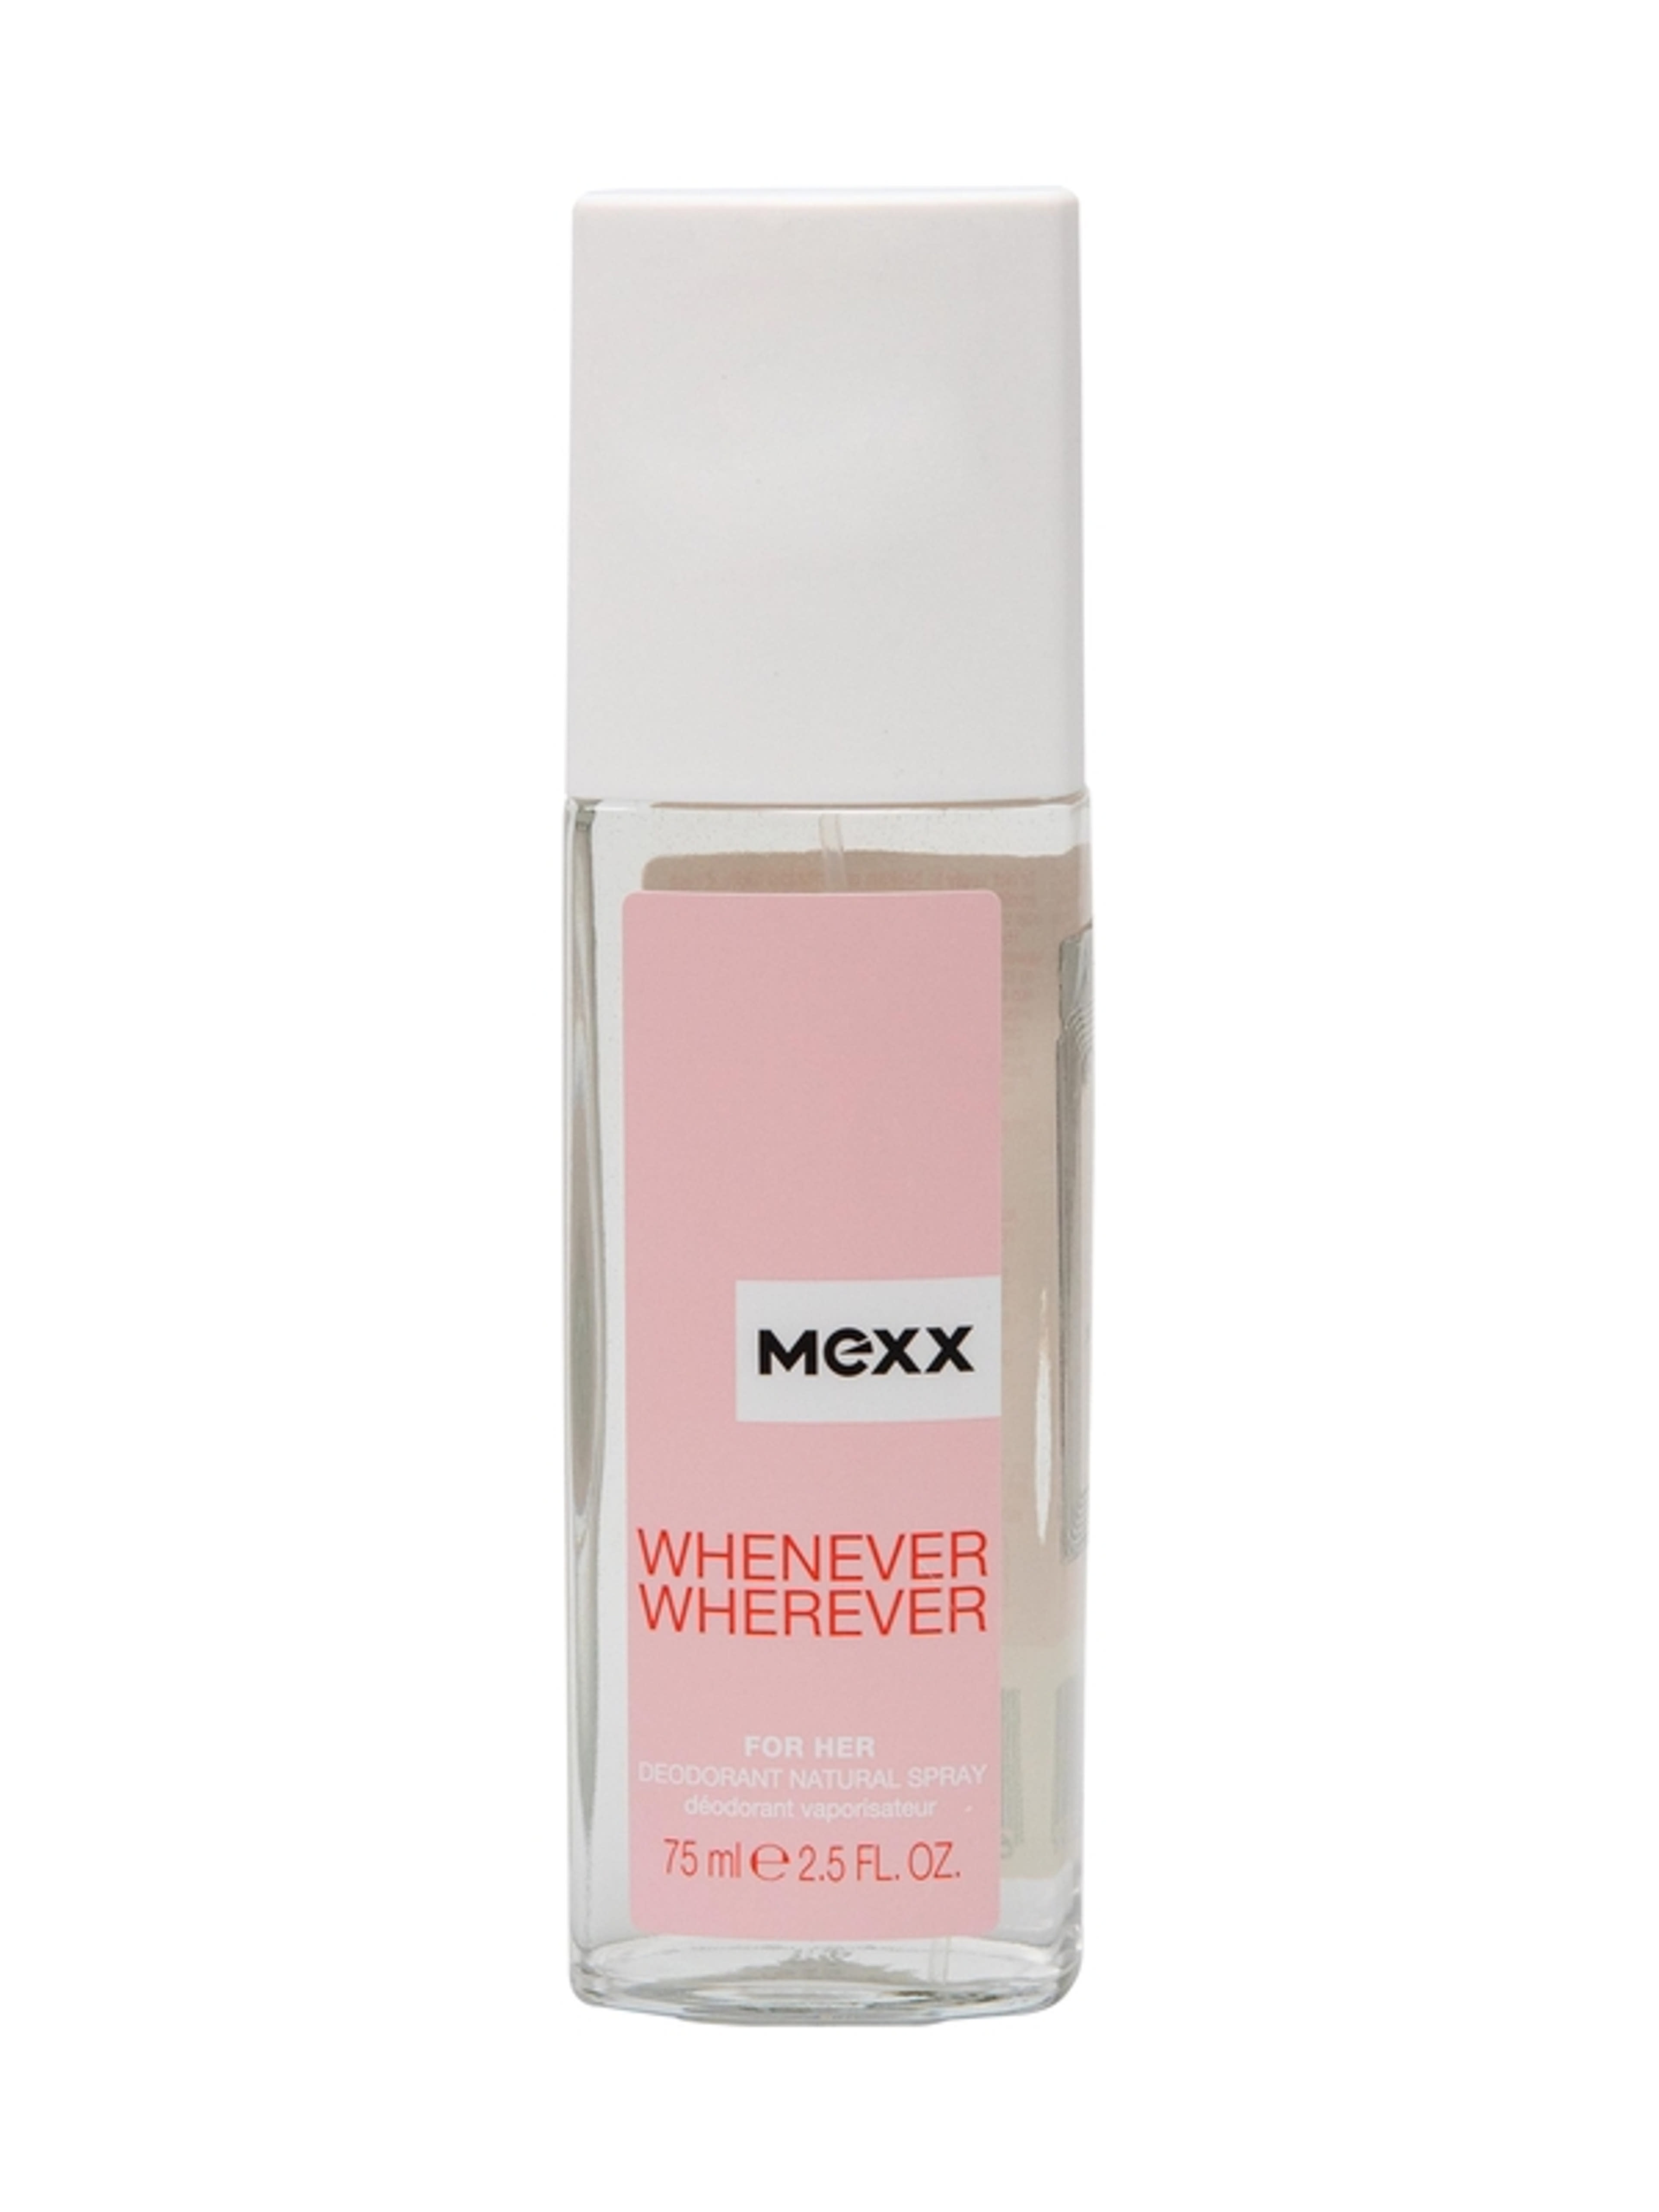 Mexx Whenever Wherever női dns - 75 ml-1